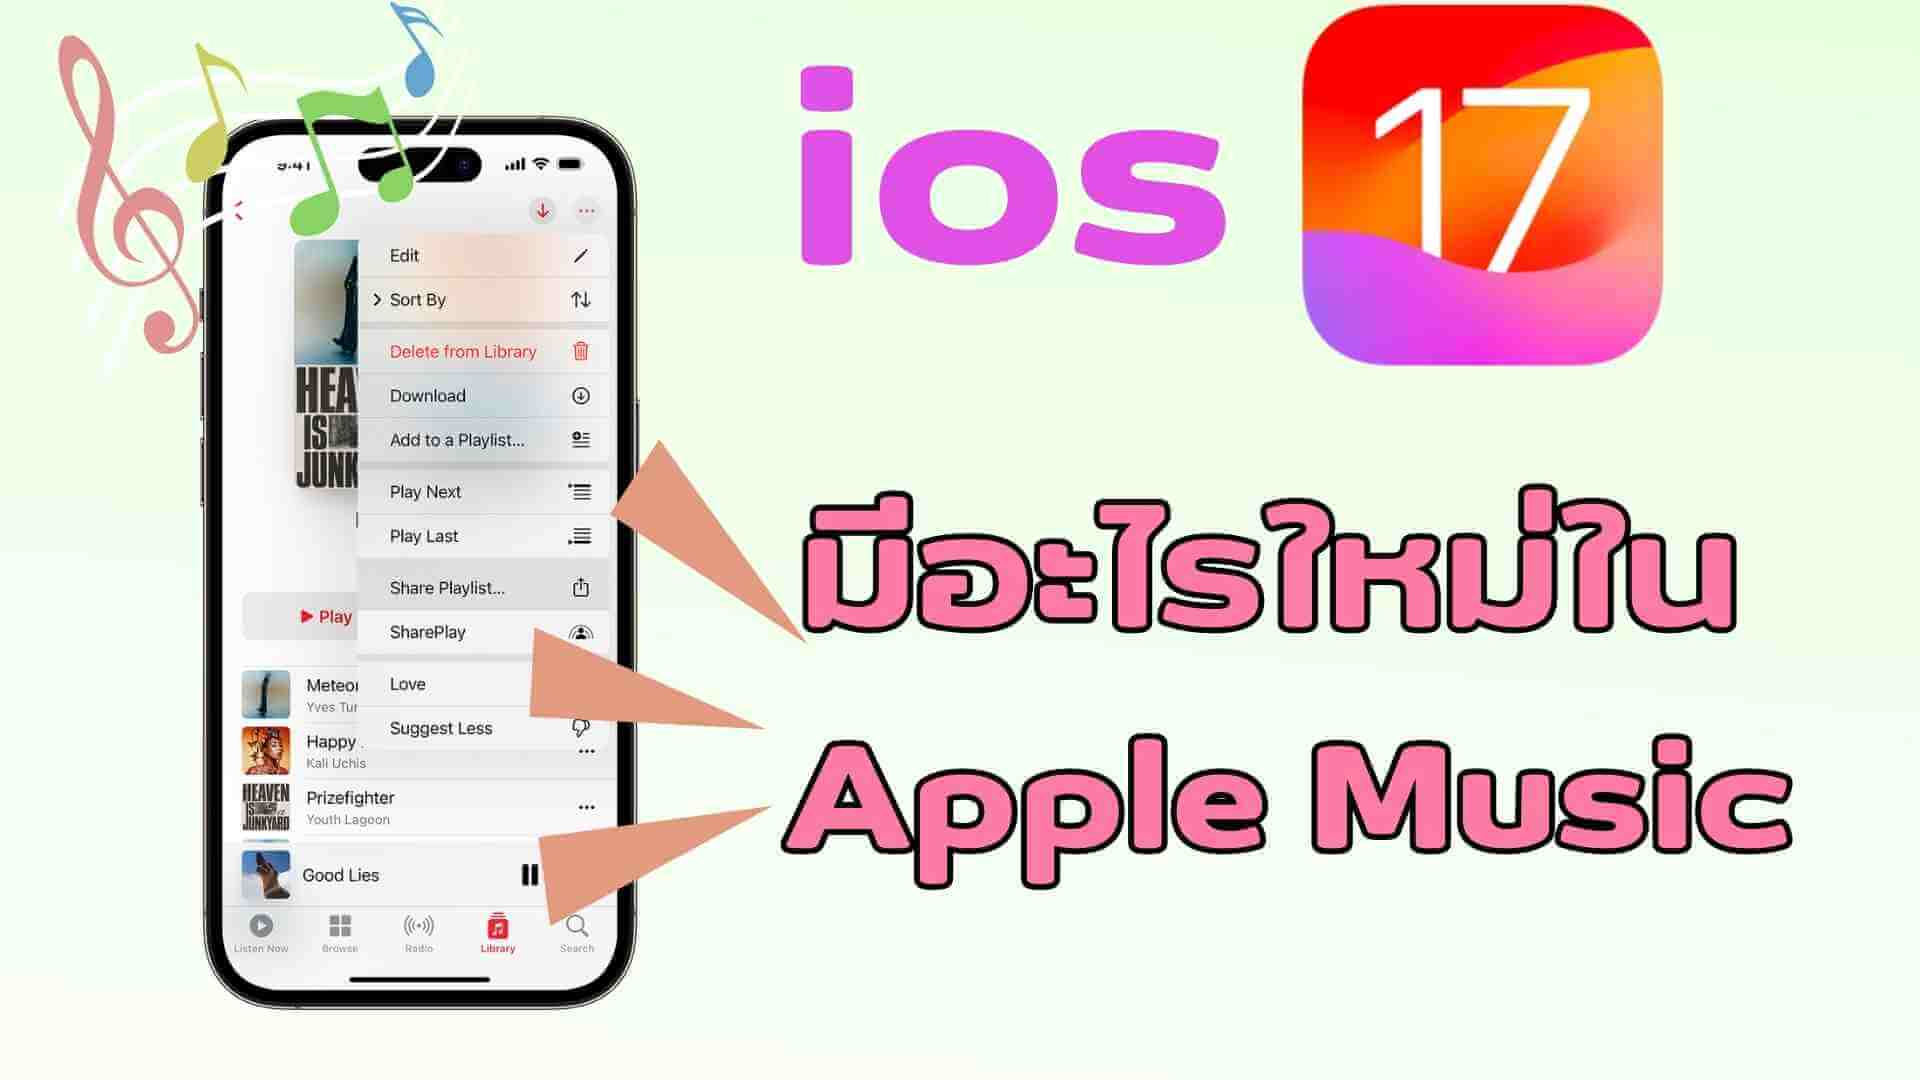 【iOS 17】 มีอะไรใหม่ใน Apple Music? 7 ฟีเจอร์ใหม่ใน Apple Music ใหม่โดยสรุป